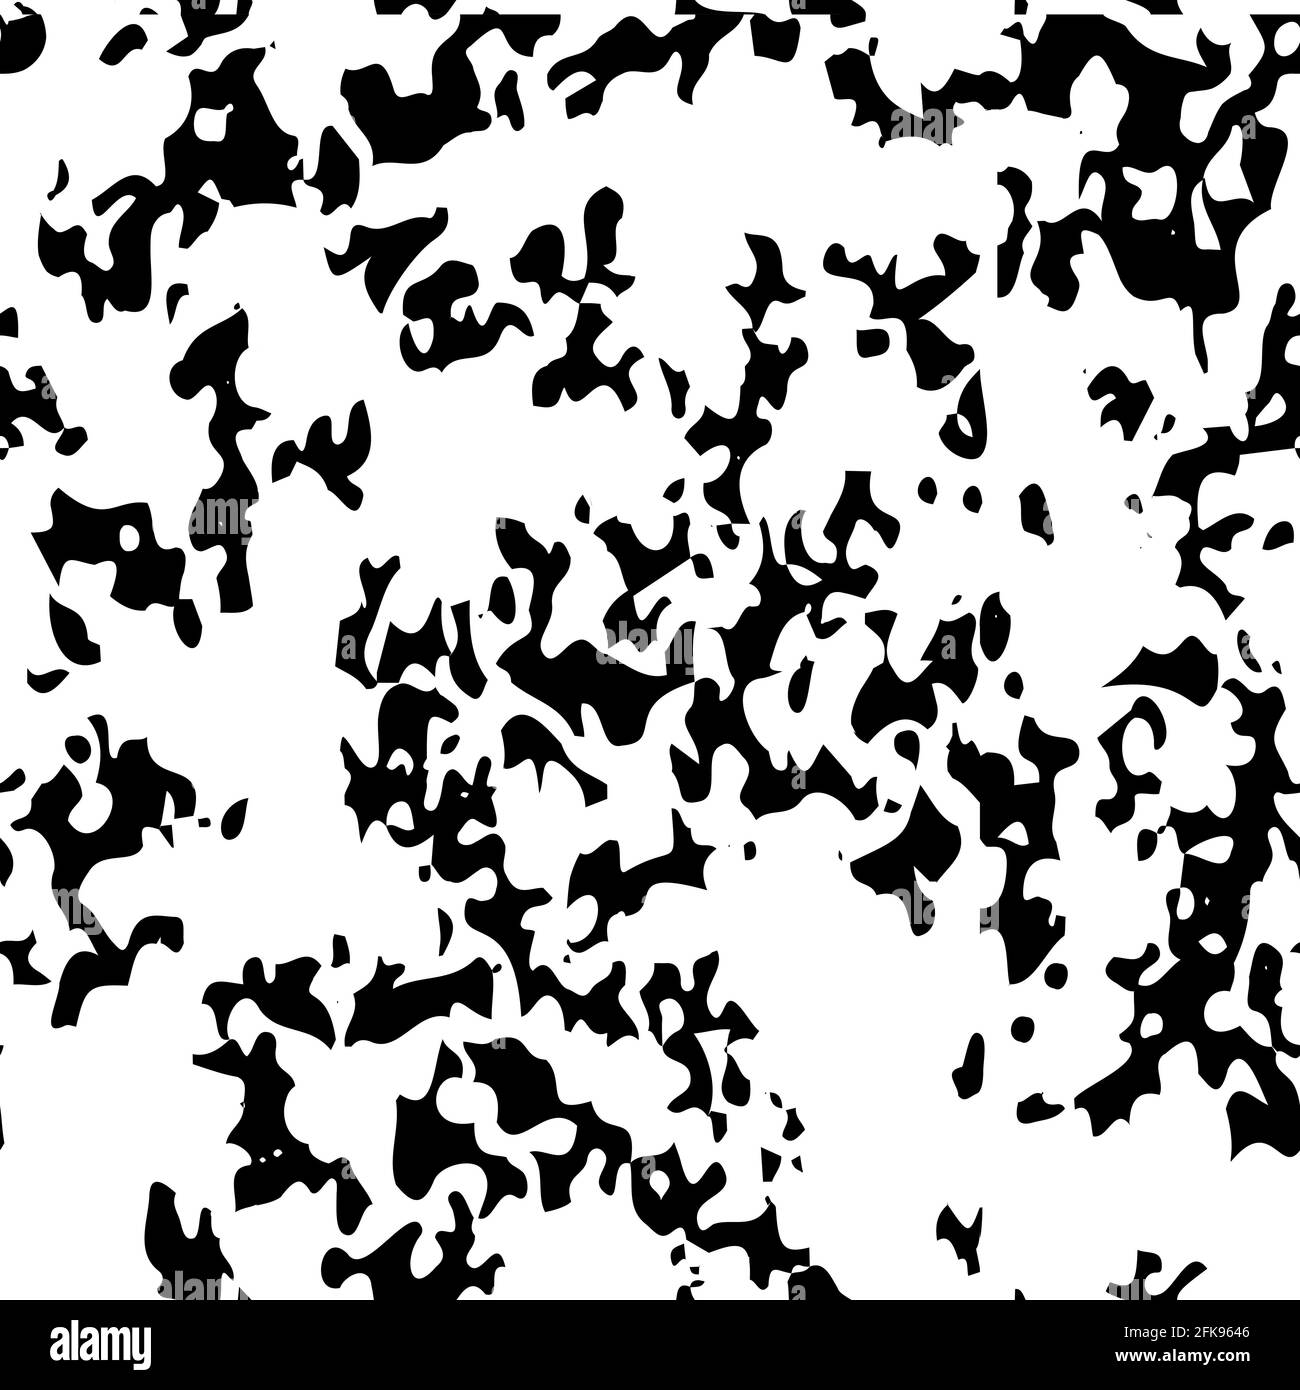 Schwarz chaotisch meliert Muster, Textur Hintergrund. Überlagerung von Körnung und Rauschen, unregelmäßige Freiformpunkte für Hintergrund und Effekte der Vorlage, Vektorillust Stock Vektor